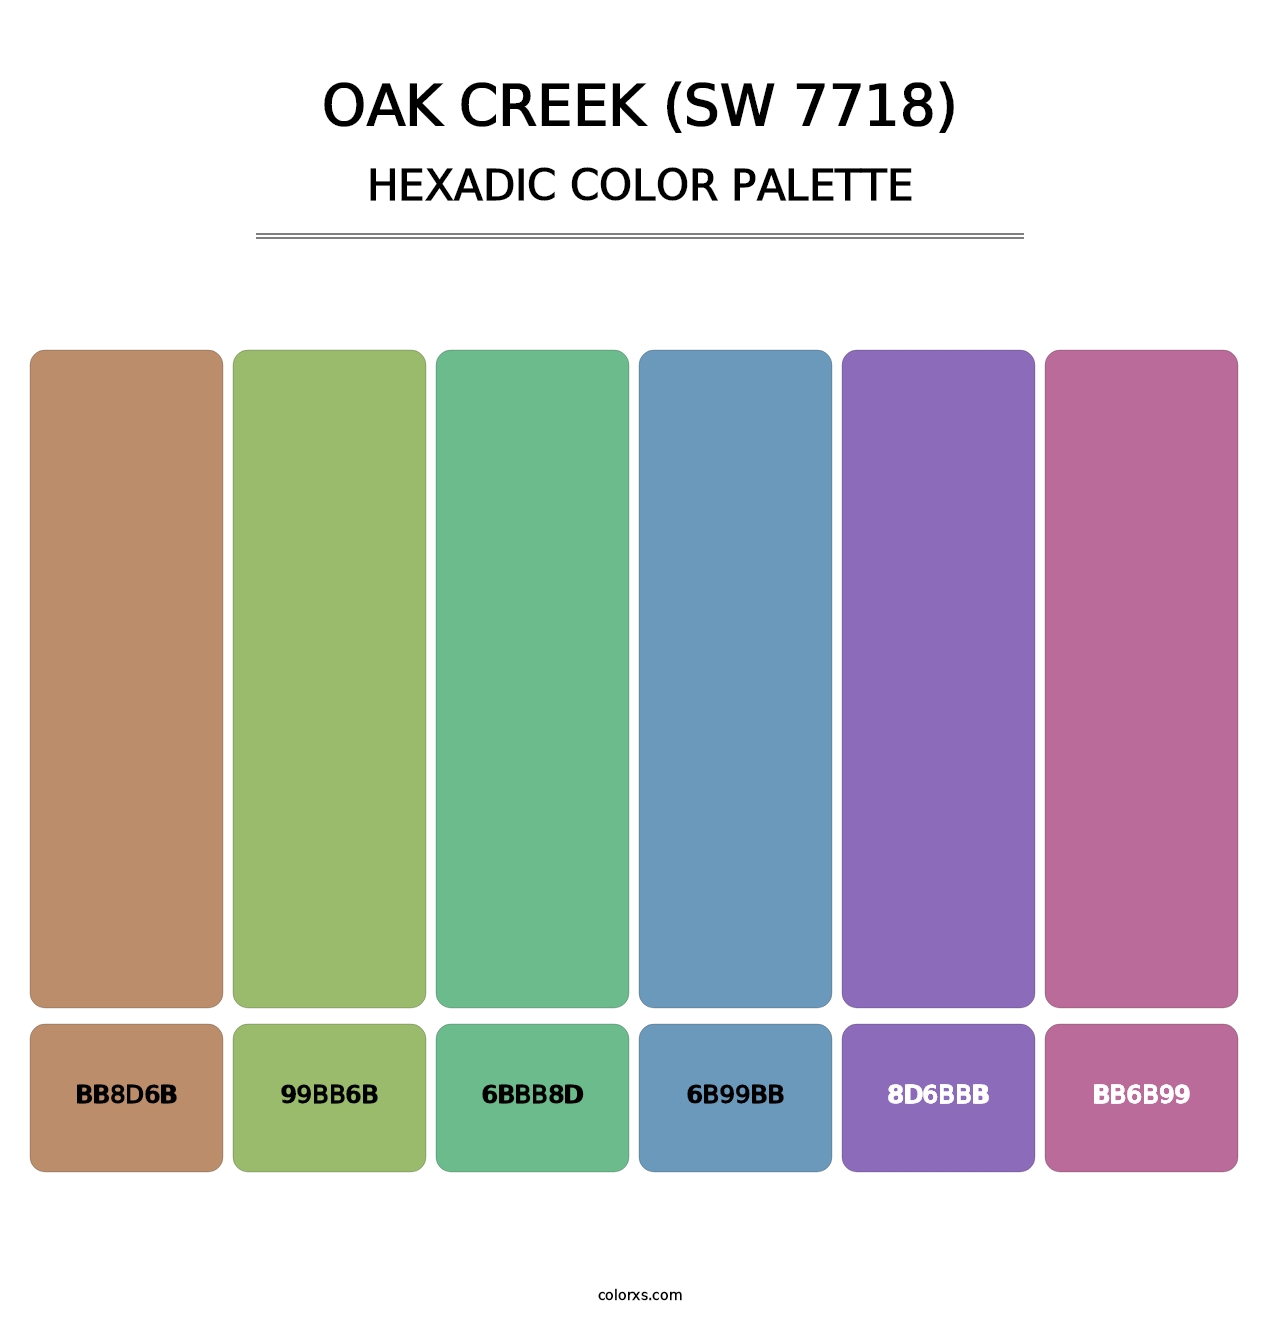 Oak Creek (SW 7718) - Hexadic Color Palette